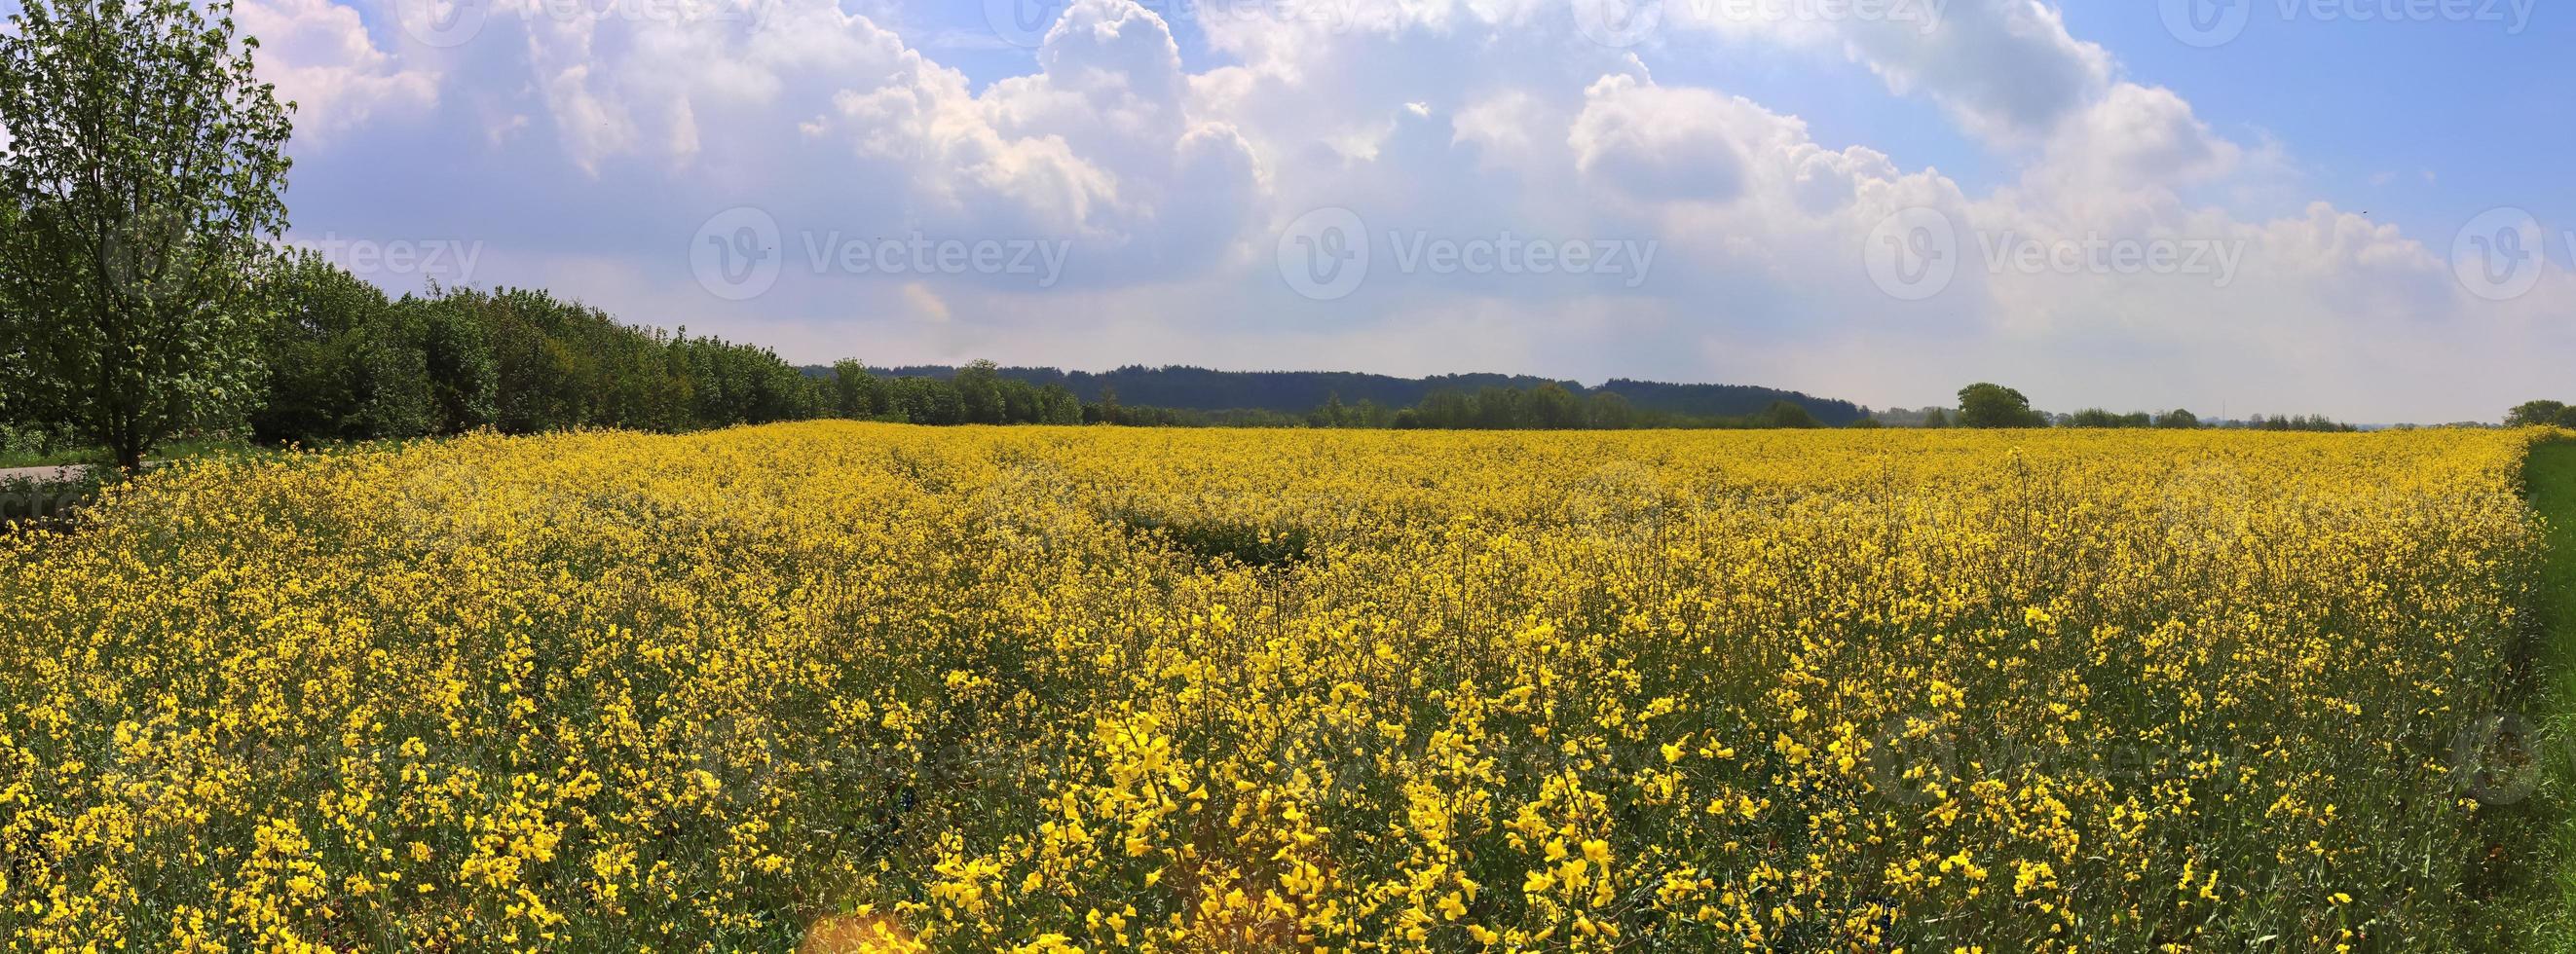 vackert högupplöst panorama av ett nordeuropeiskt landslandskap med fält och grönt gräs foto